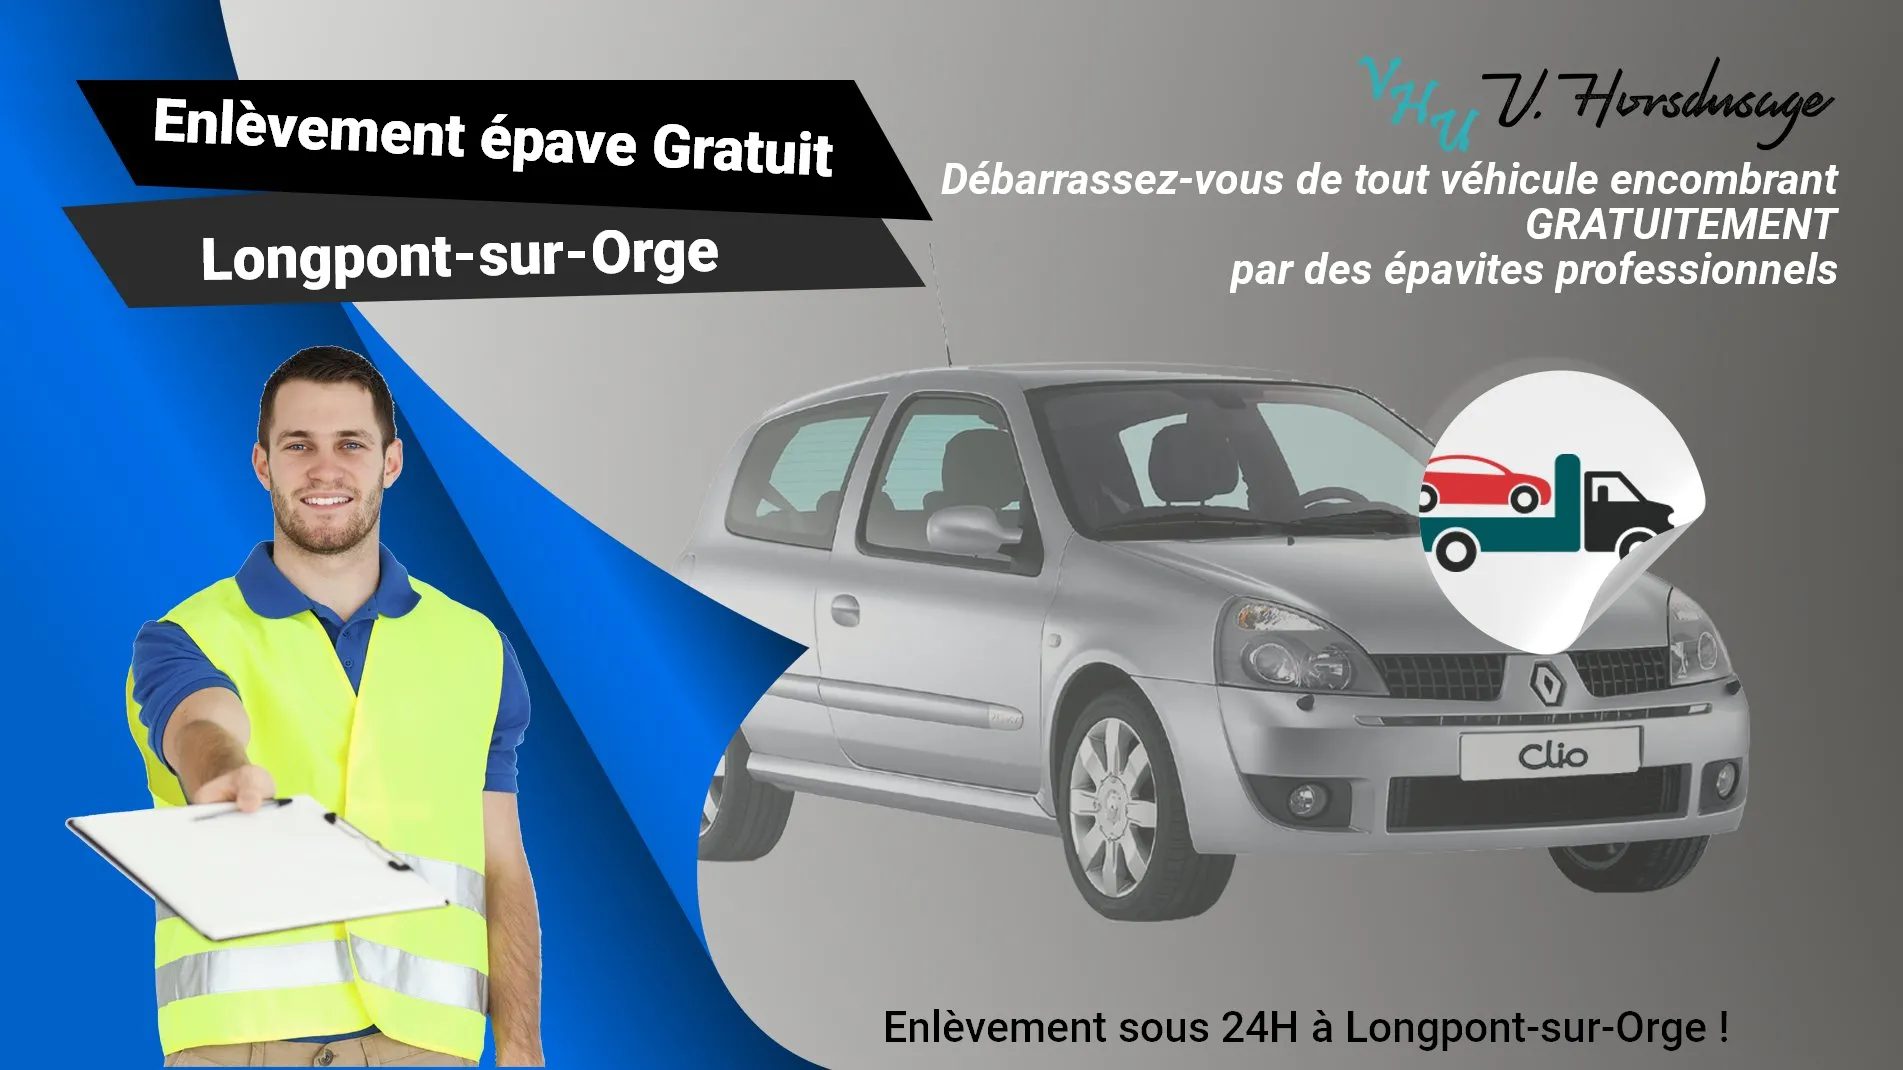 Pour un enlèvement gratuit à Longpont-sur-Orge, contactez nos épavistes agréé VHU